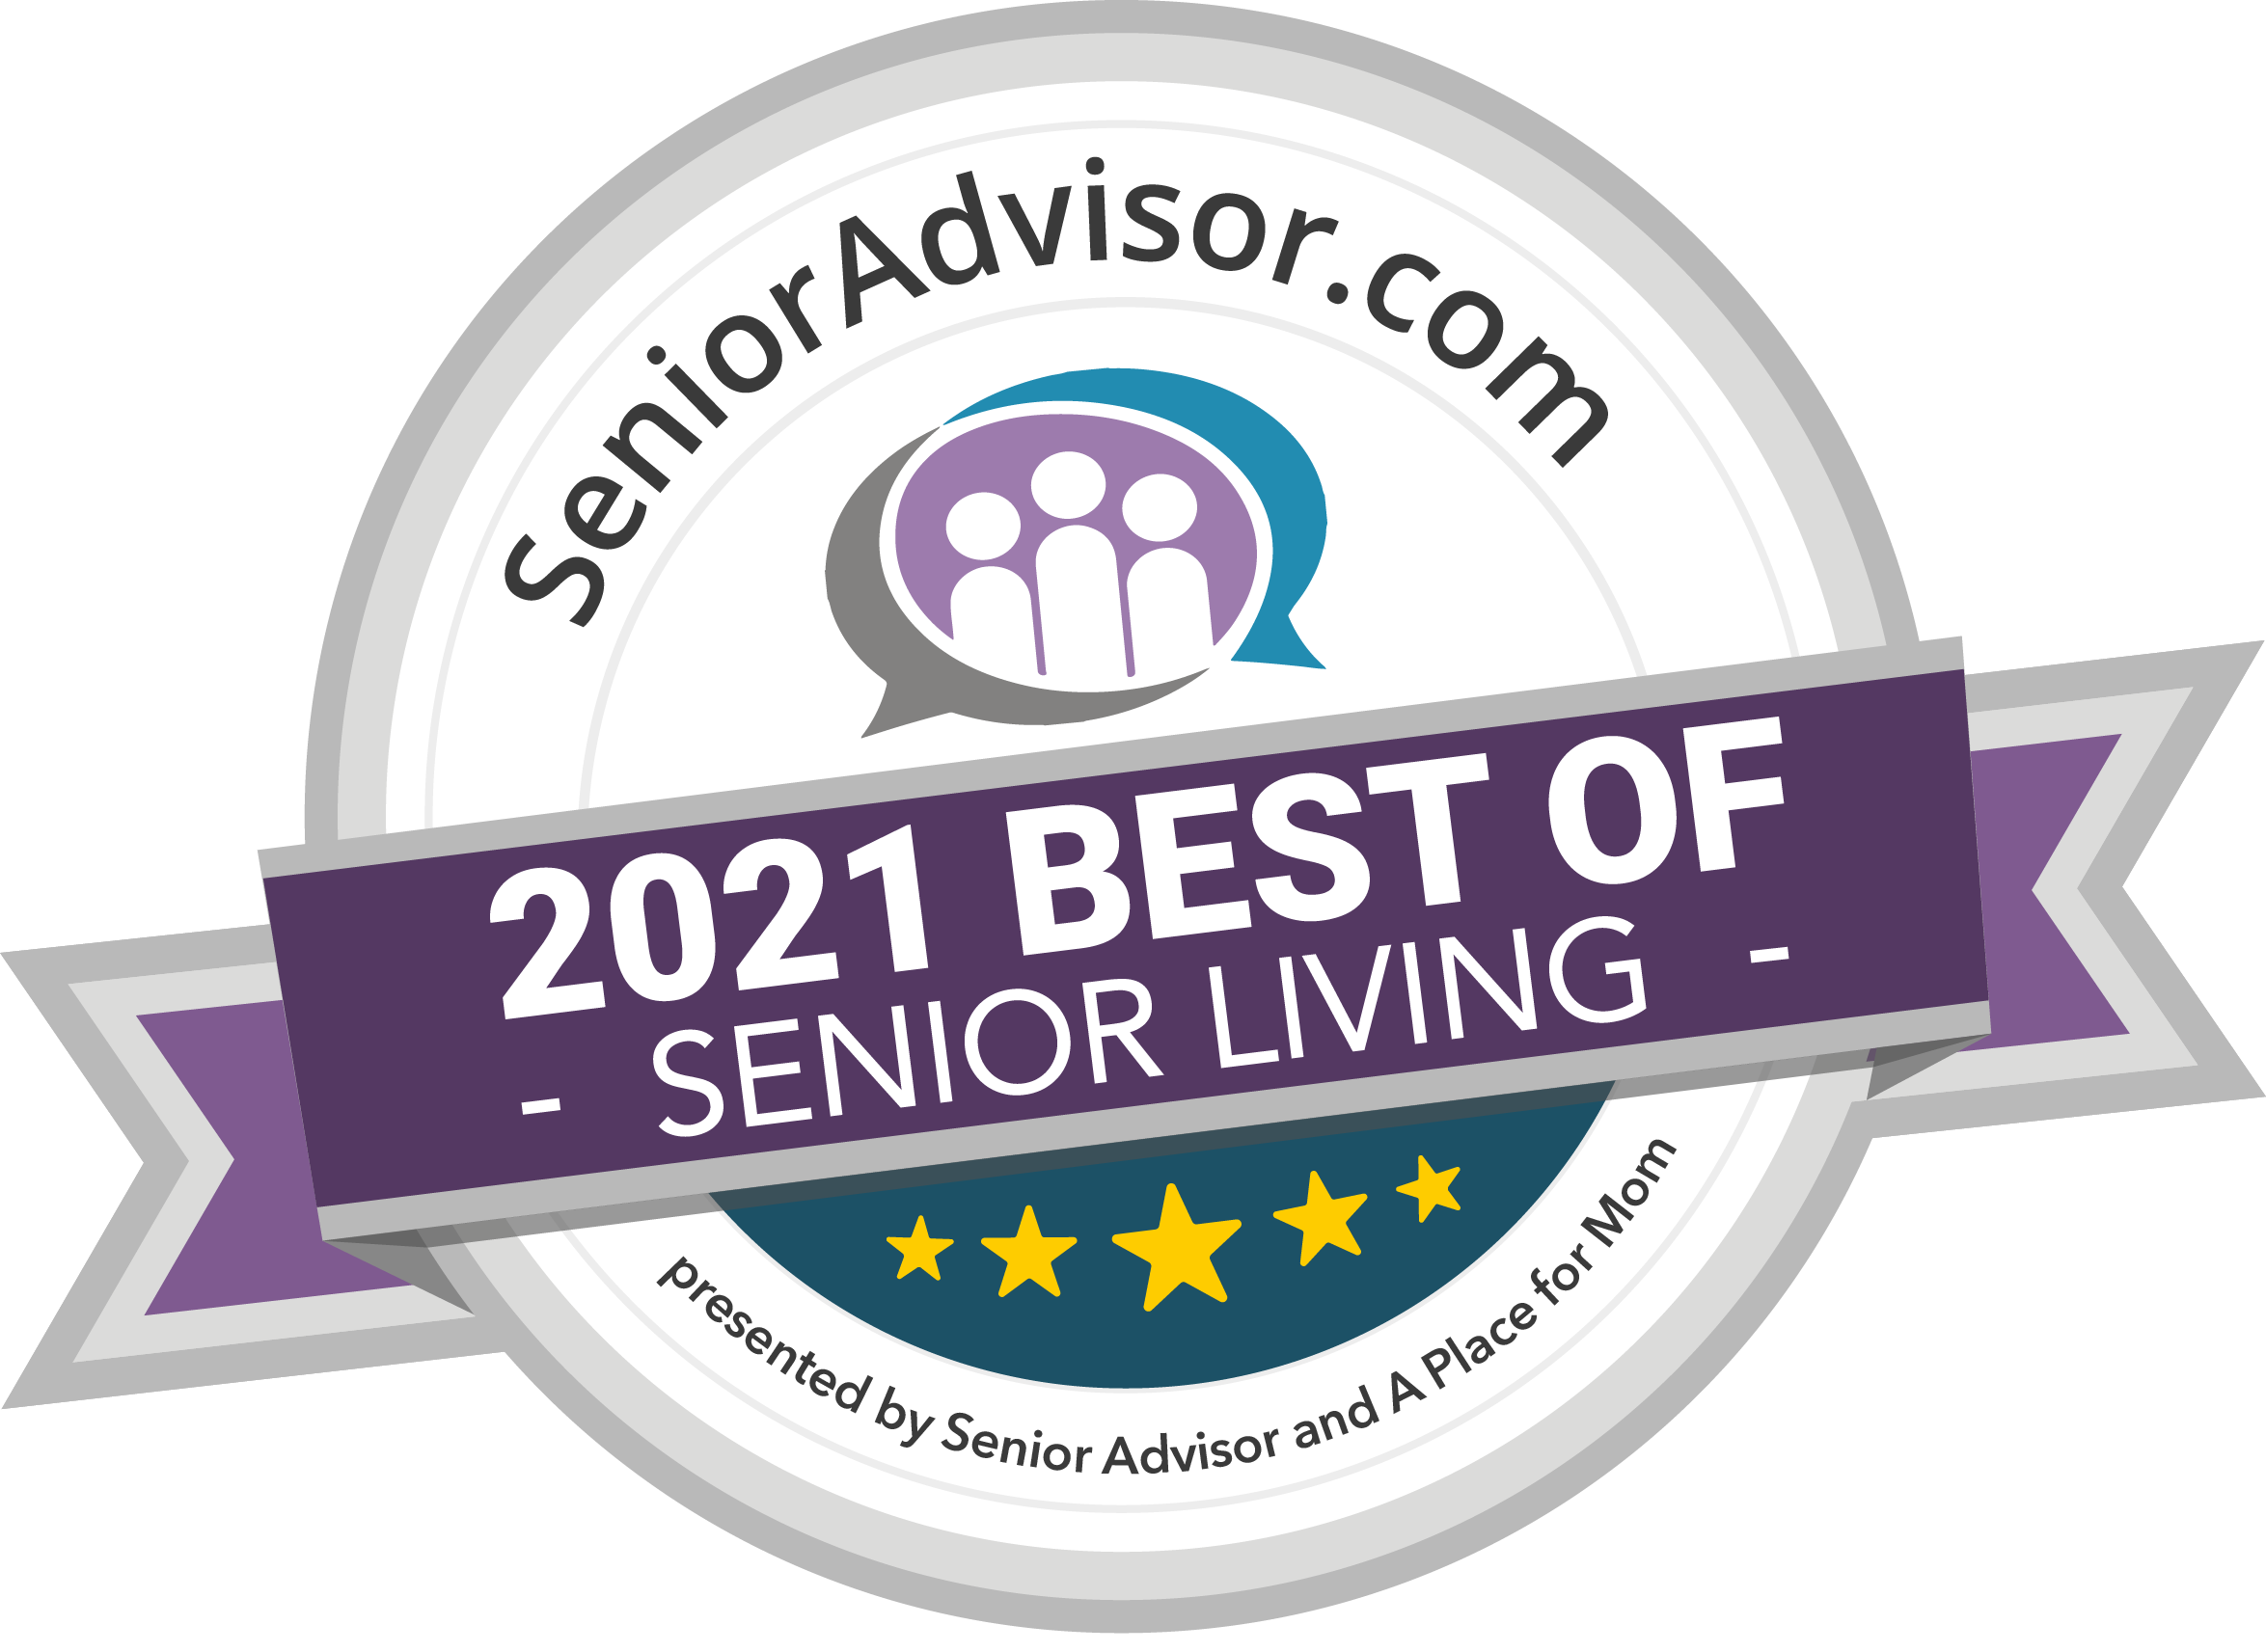 2021 Best of Senior Living